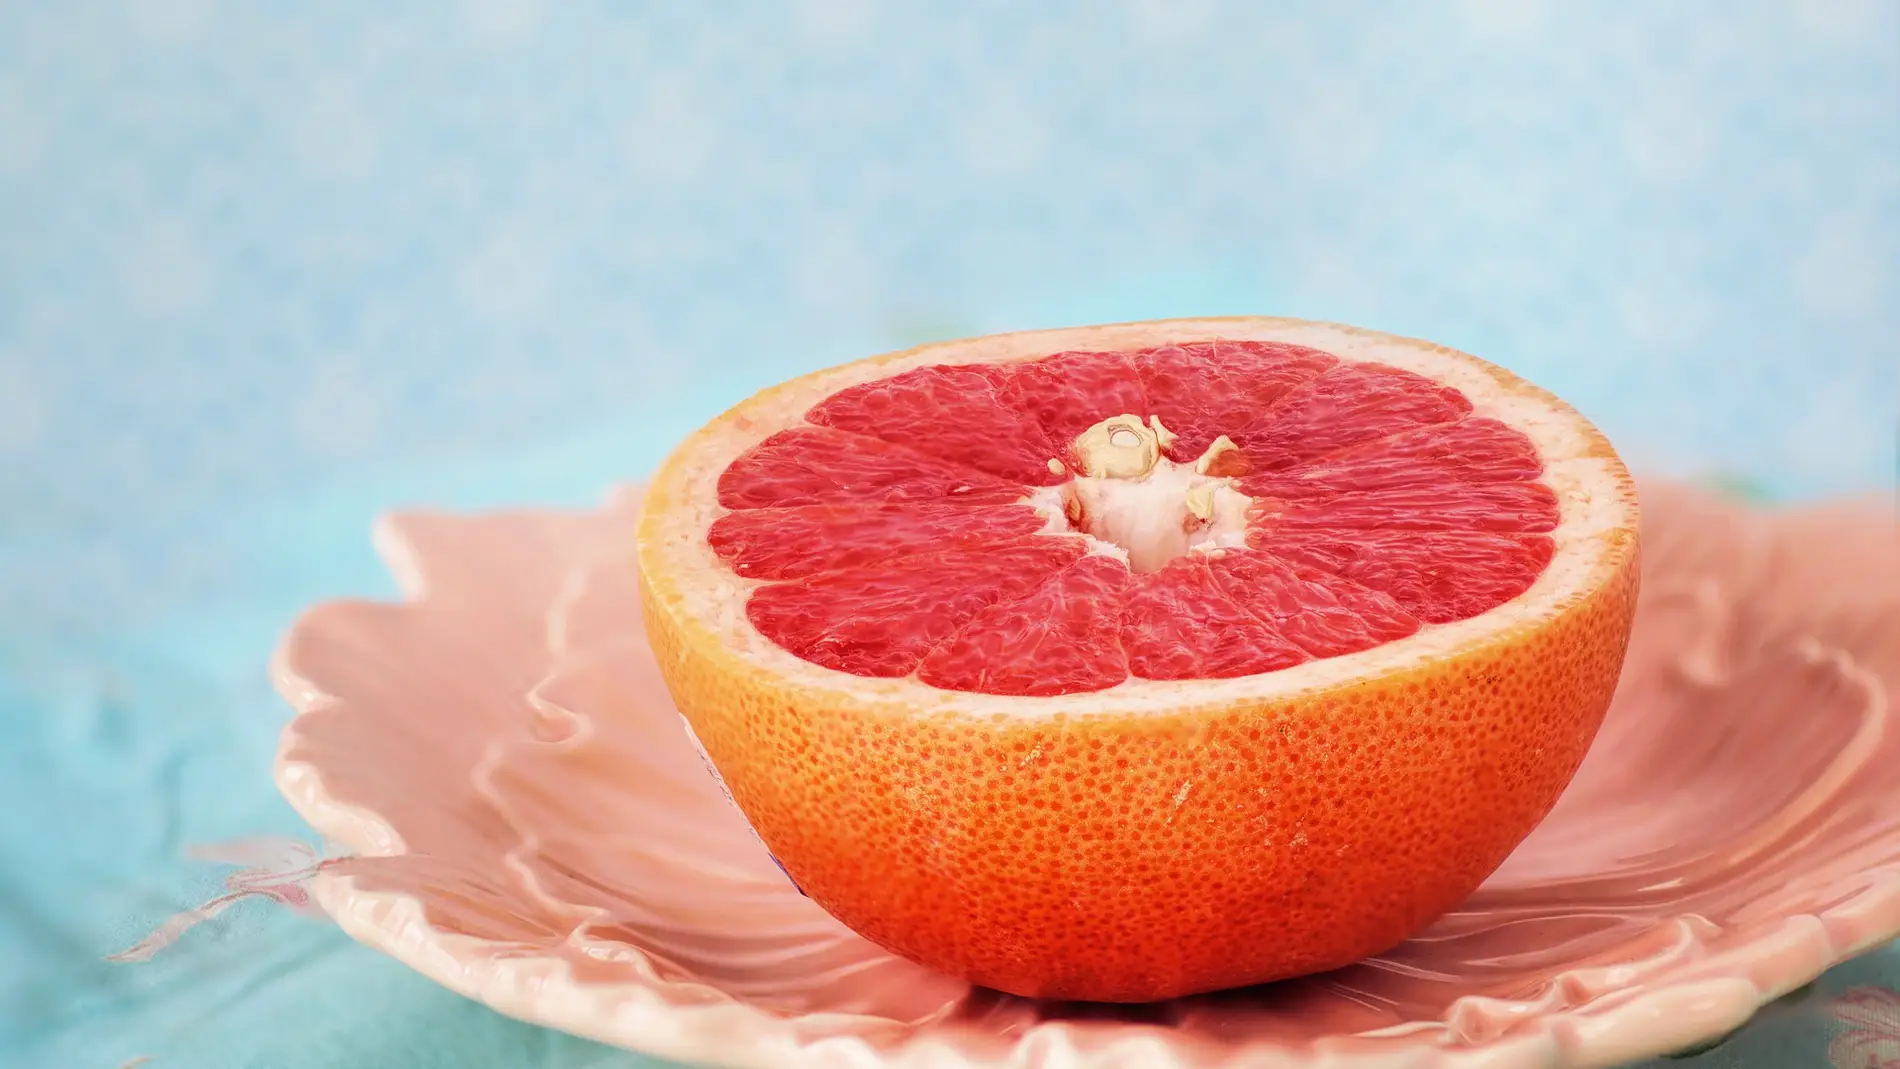 La fruta que no deberías comer NUNCA si tomas antihistamínicos